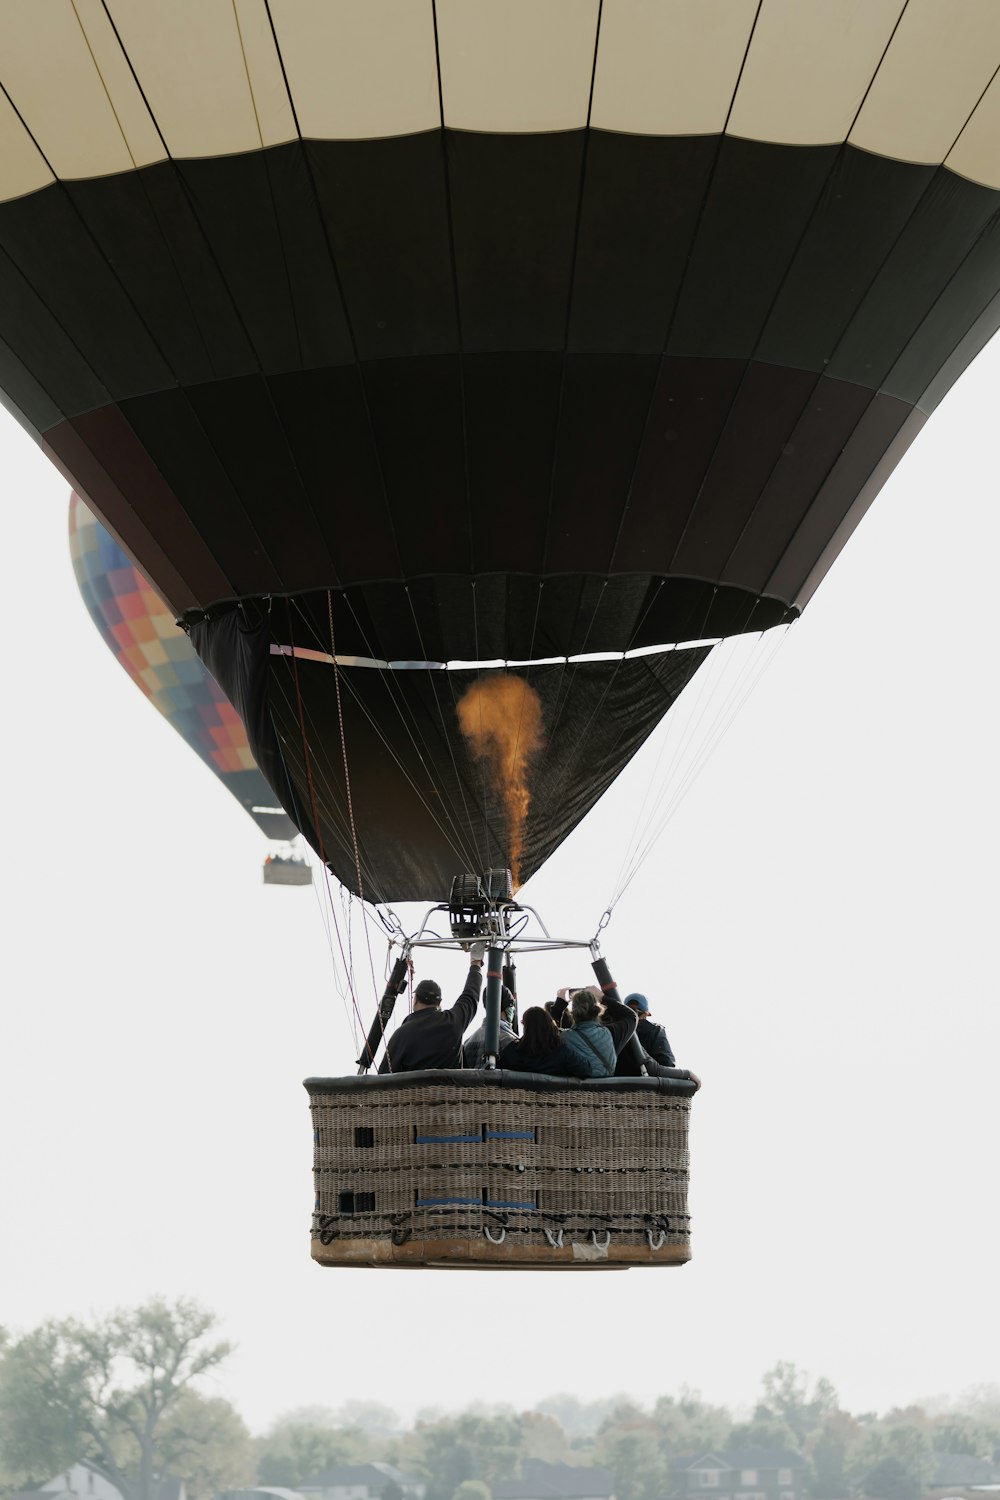 3 men standing on hot air balloon